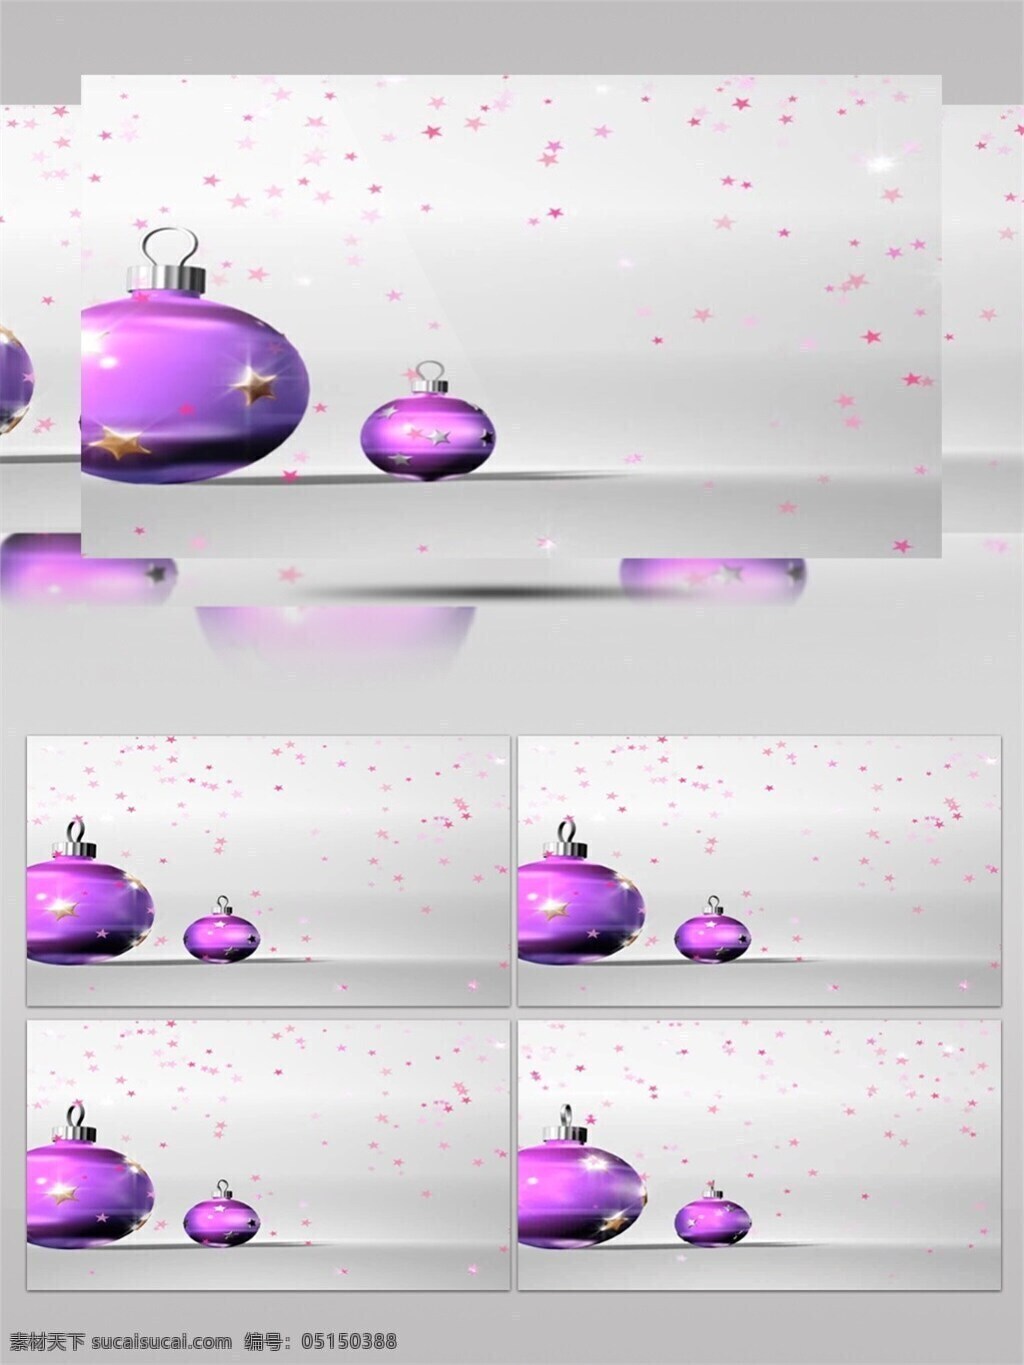 紫色 灯笼 圣诞节 视频 节日壁纸 节日素材 节日 特效 圣诞节庆祝 炫酷紫色 紫色灯笼